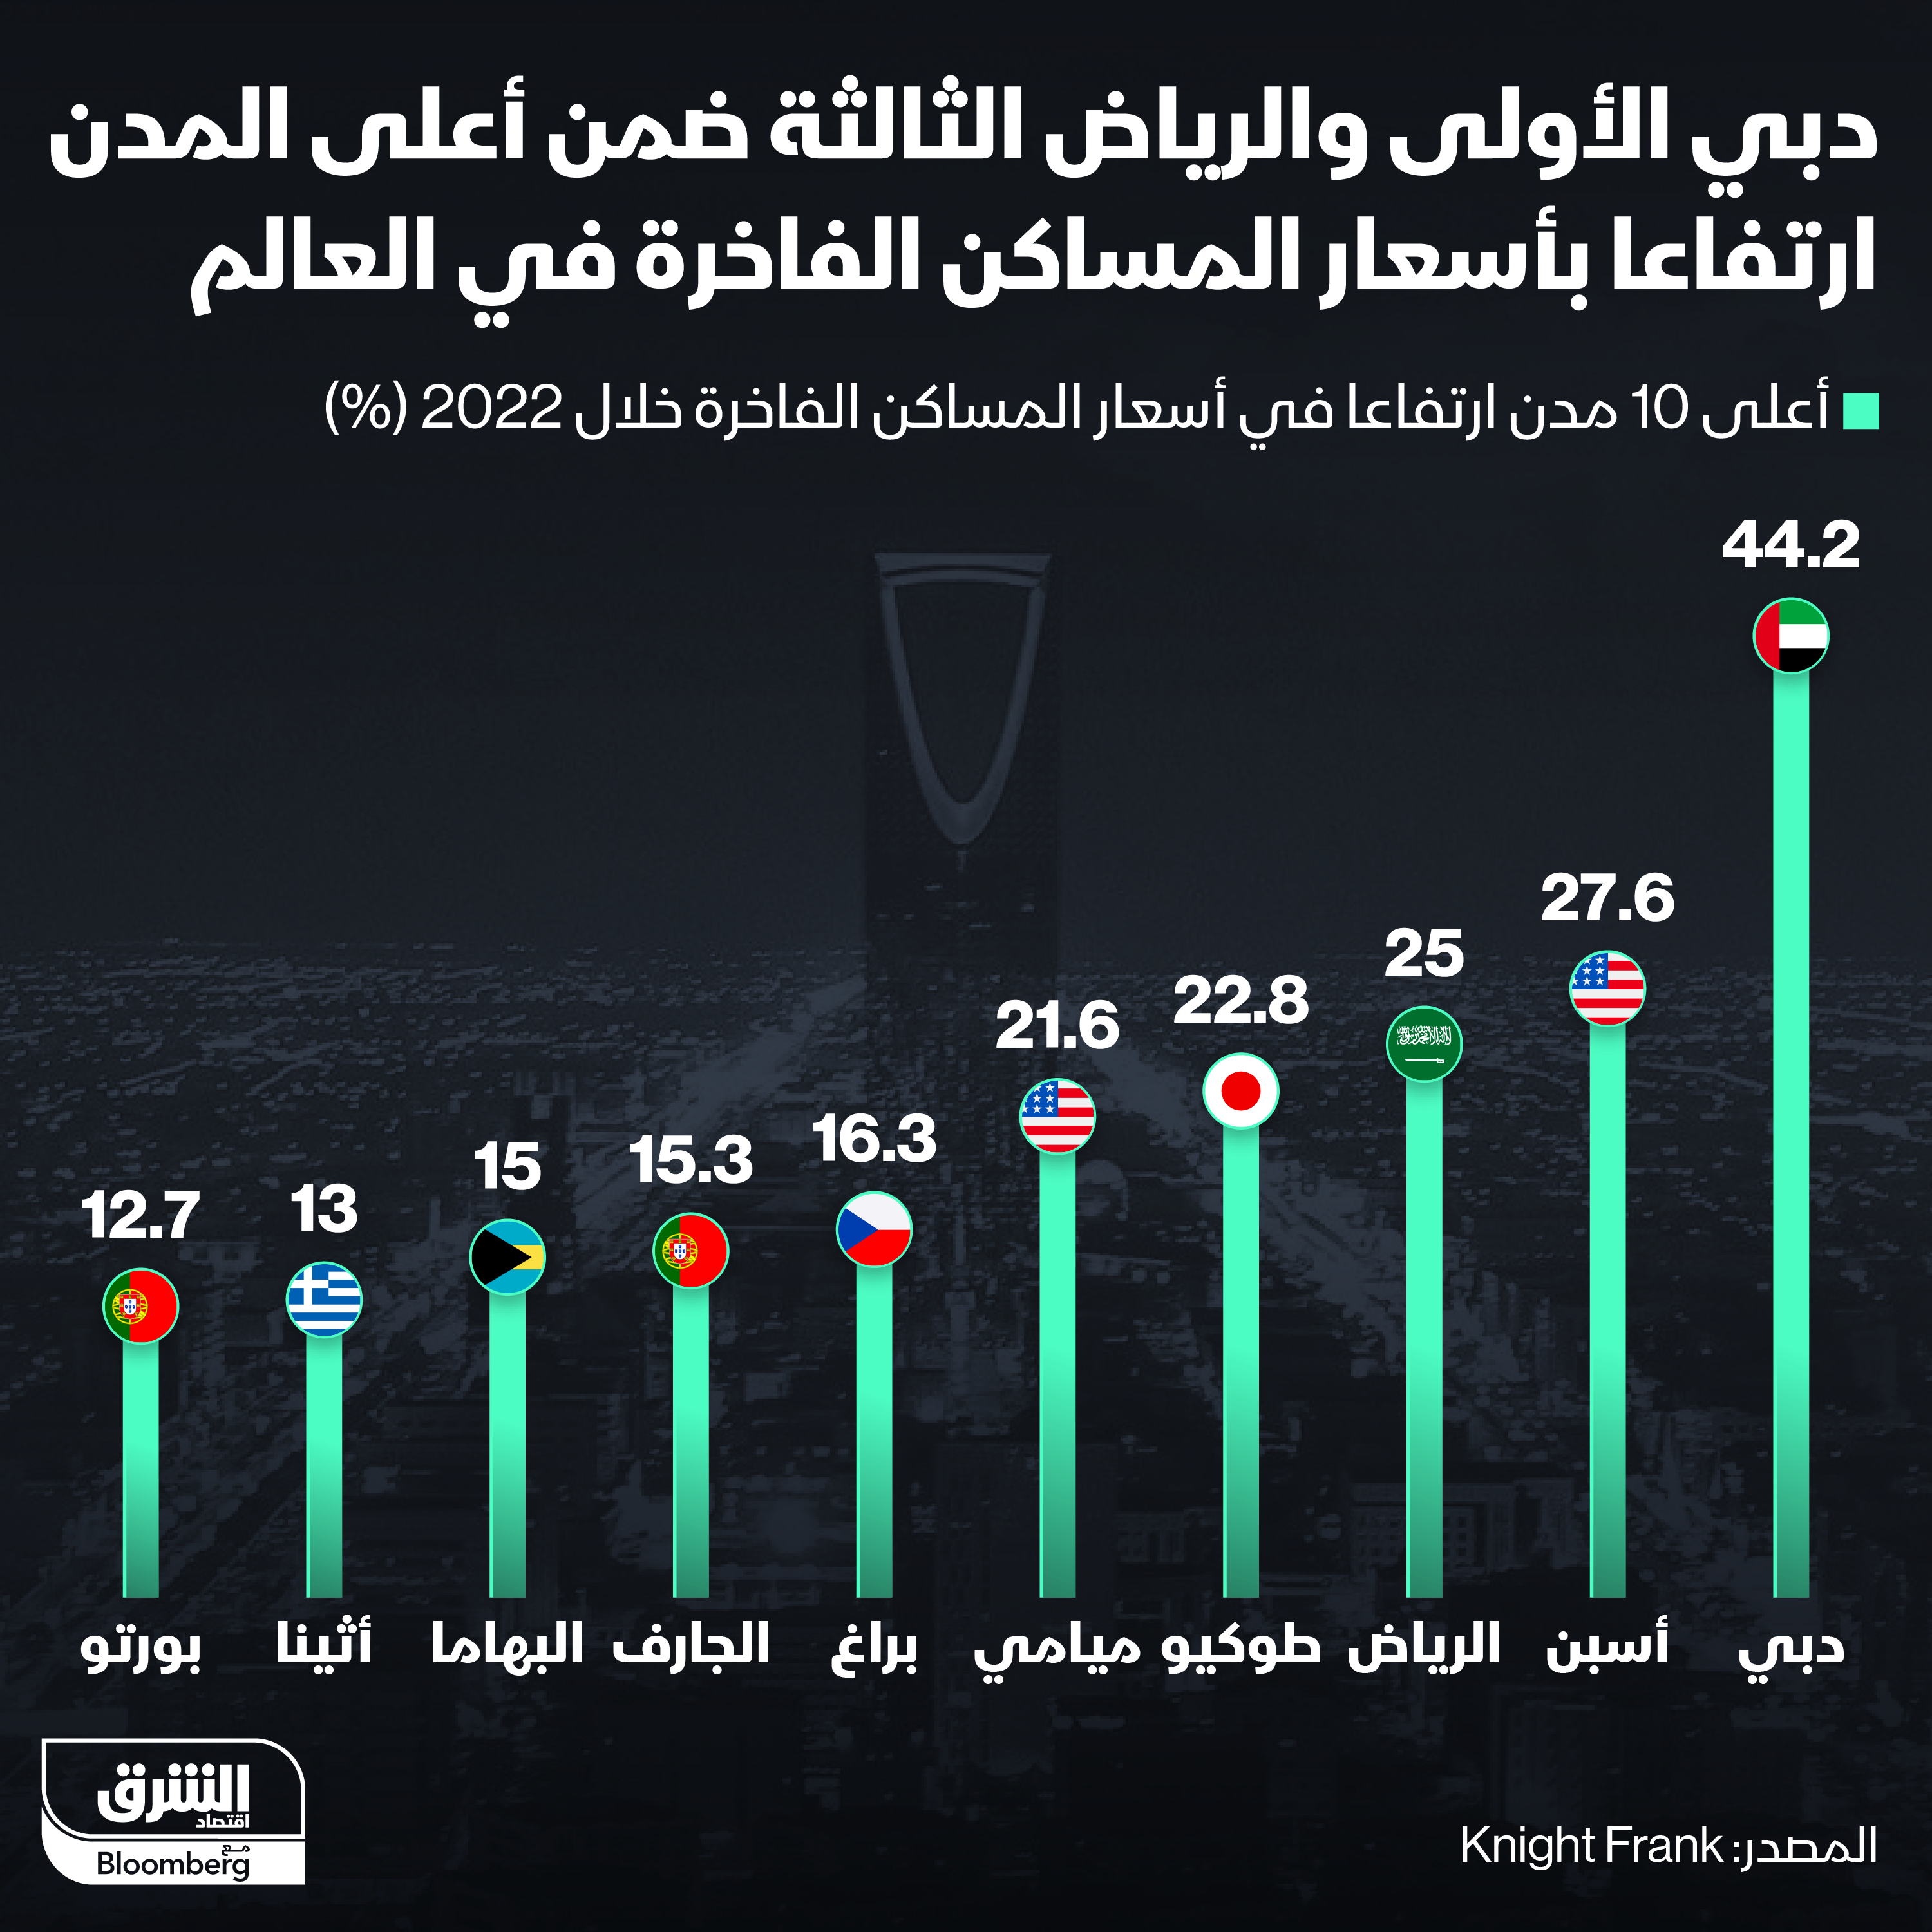 دبي والرياض ضمن أعلى المدن ارتفاعاً بأسعار المساكن الفاخرة عالمياً